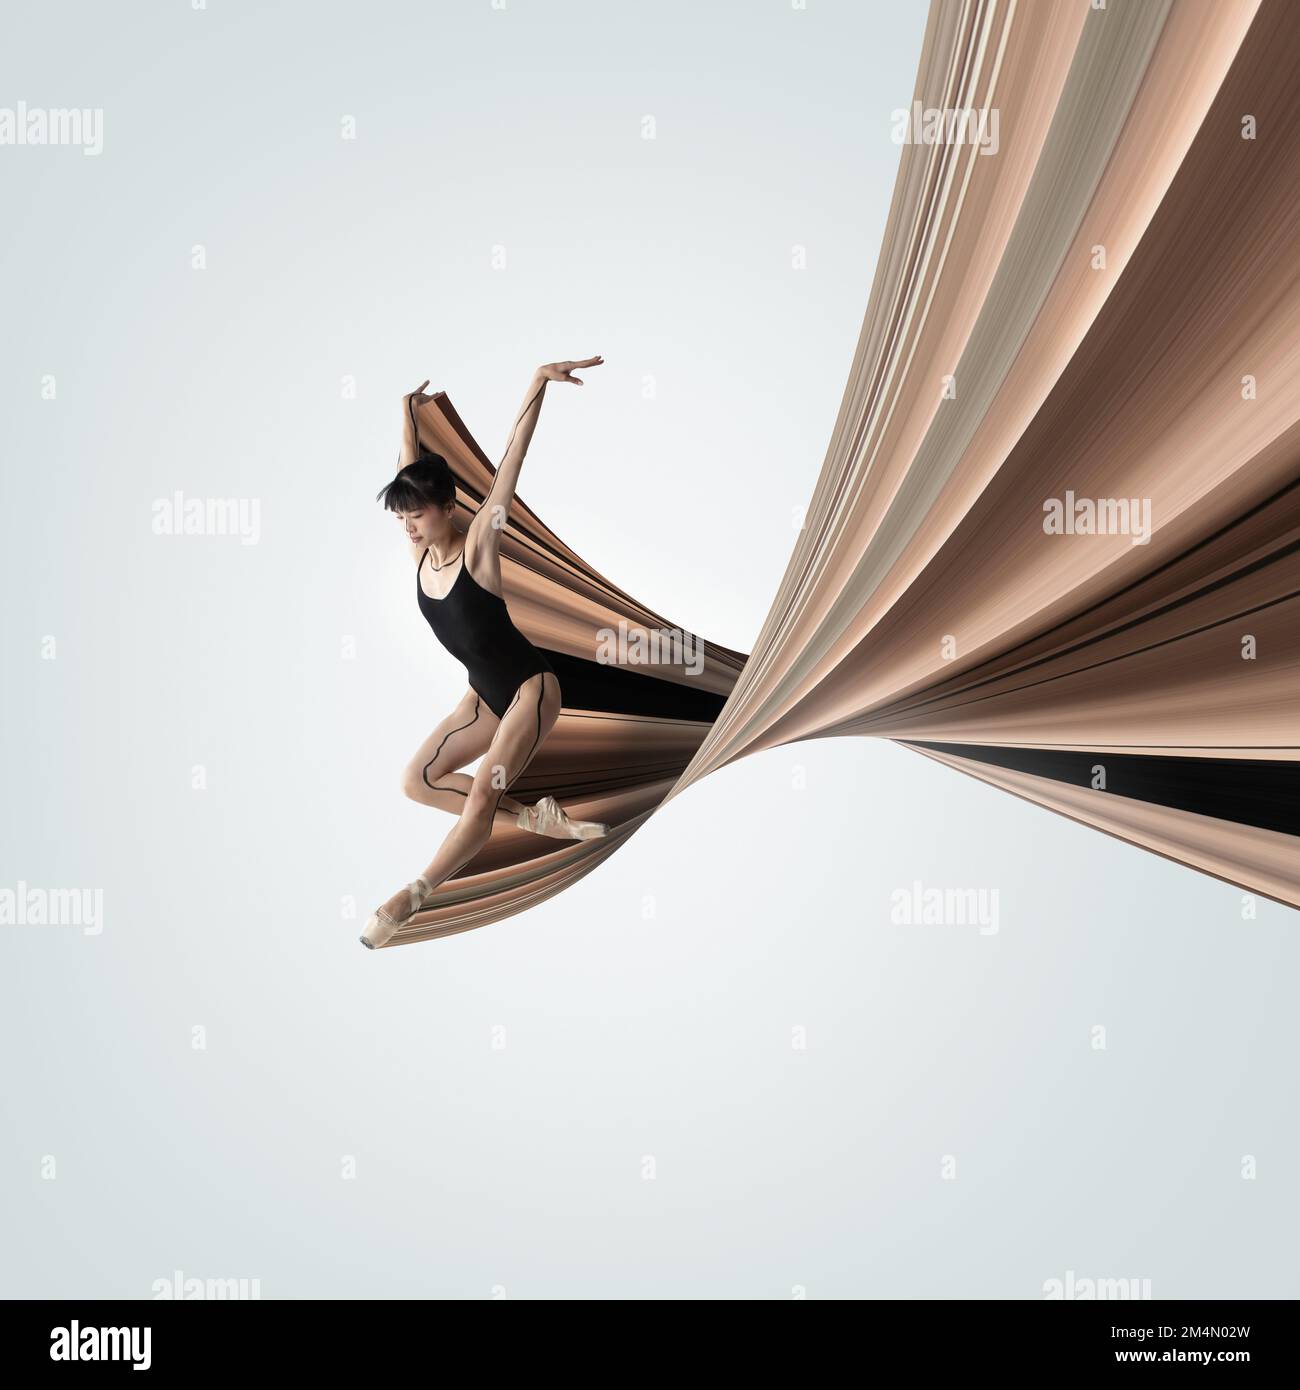 Design moderne. Art contemporain Jeune ballerine expressive dansant, se présentant sur fond clair. Elément de conception abstrait Banque D'Images